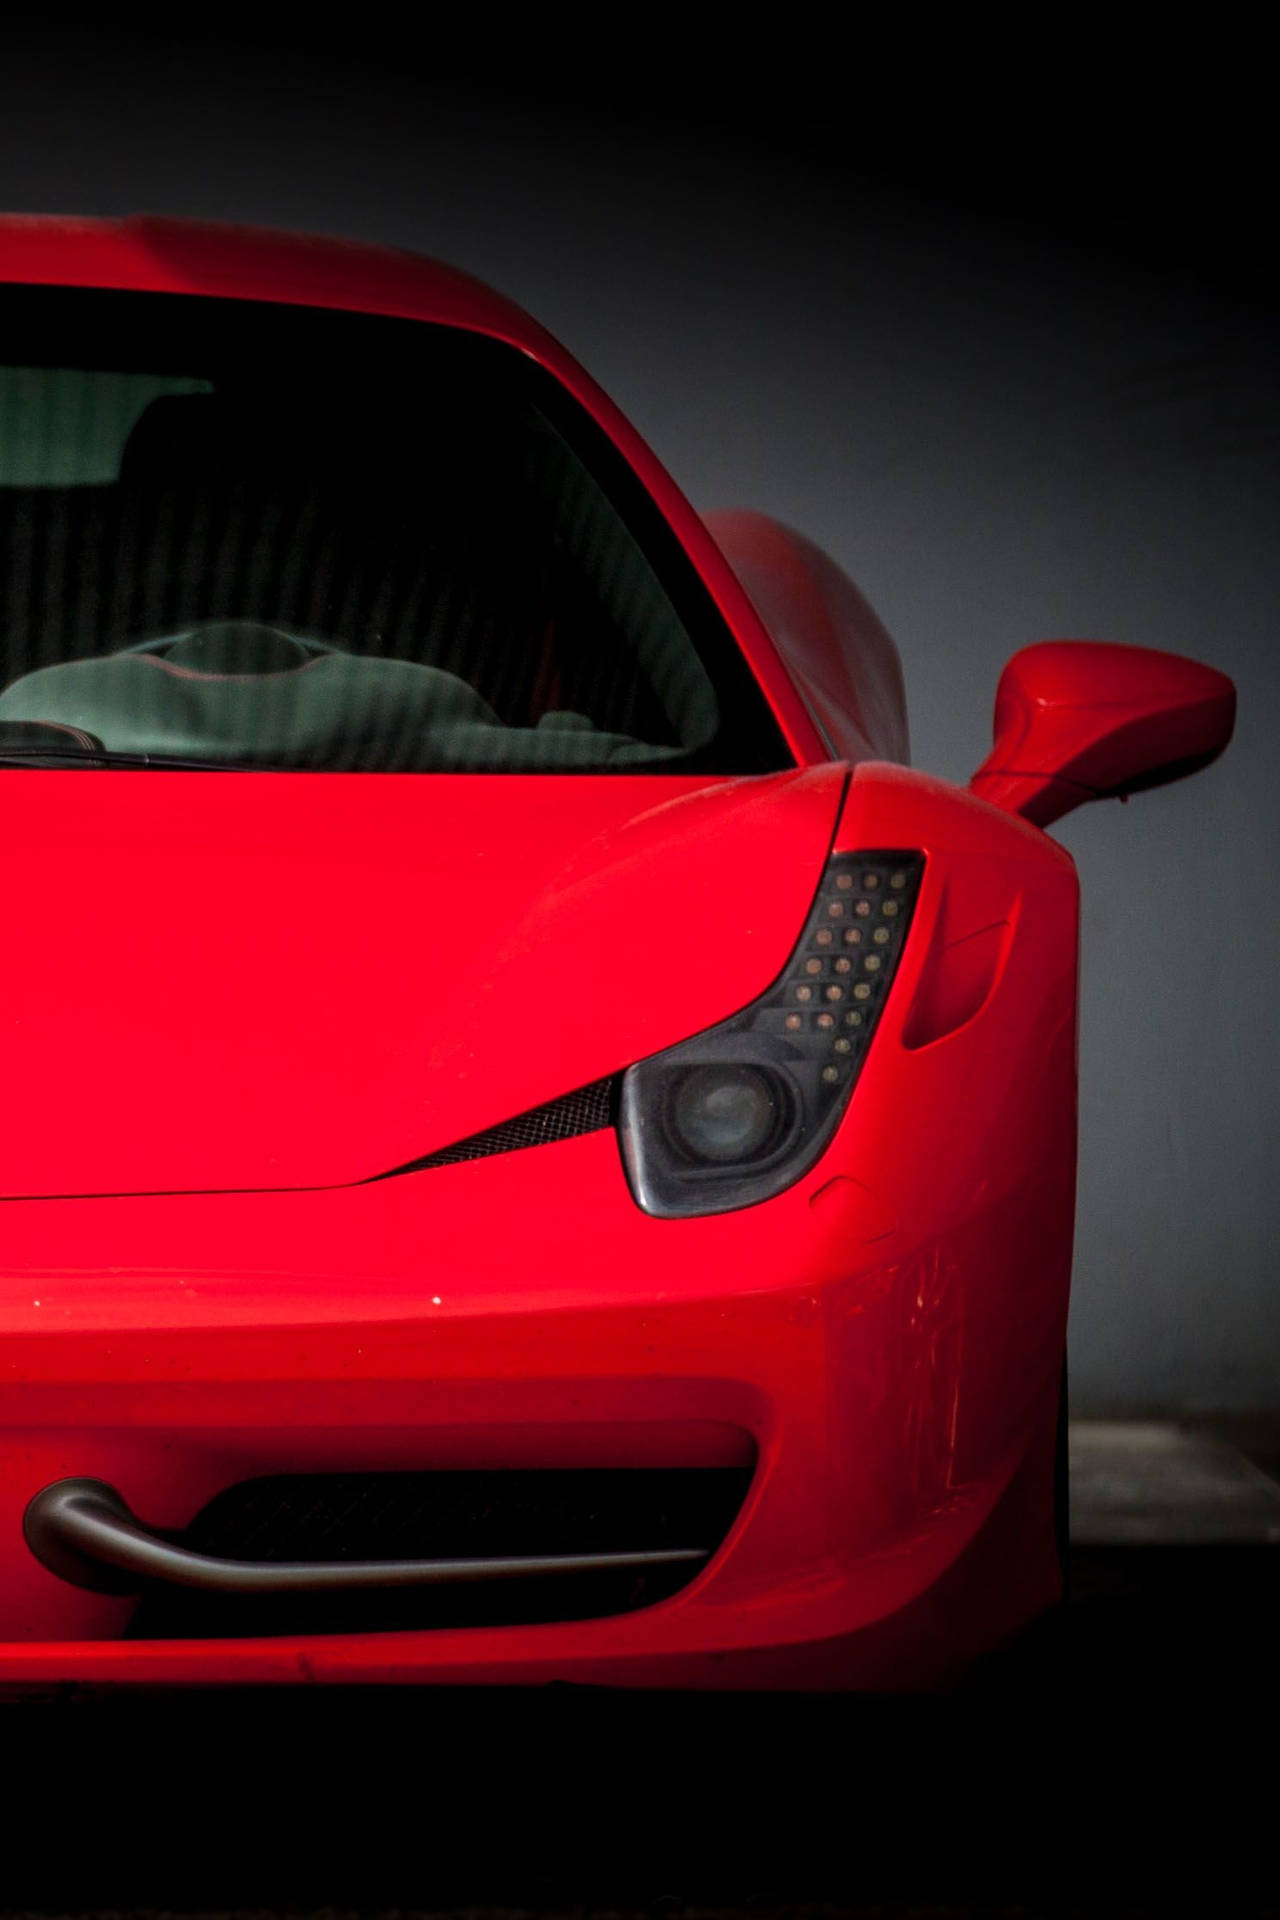 Red Visualization Ferrari Iphone Background